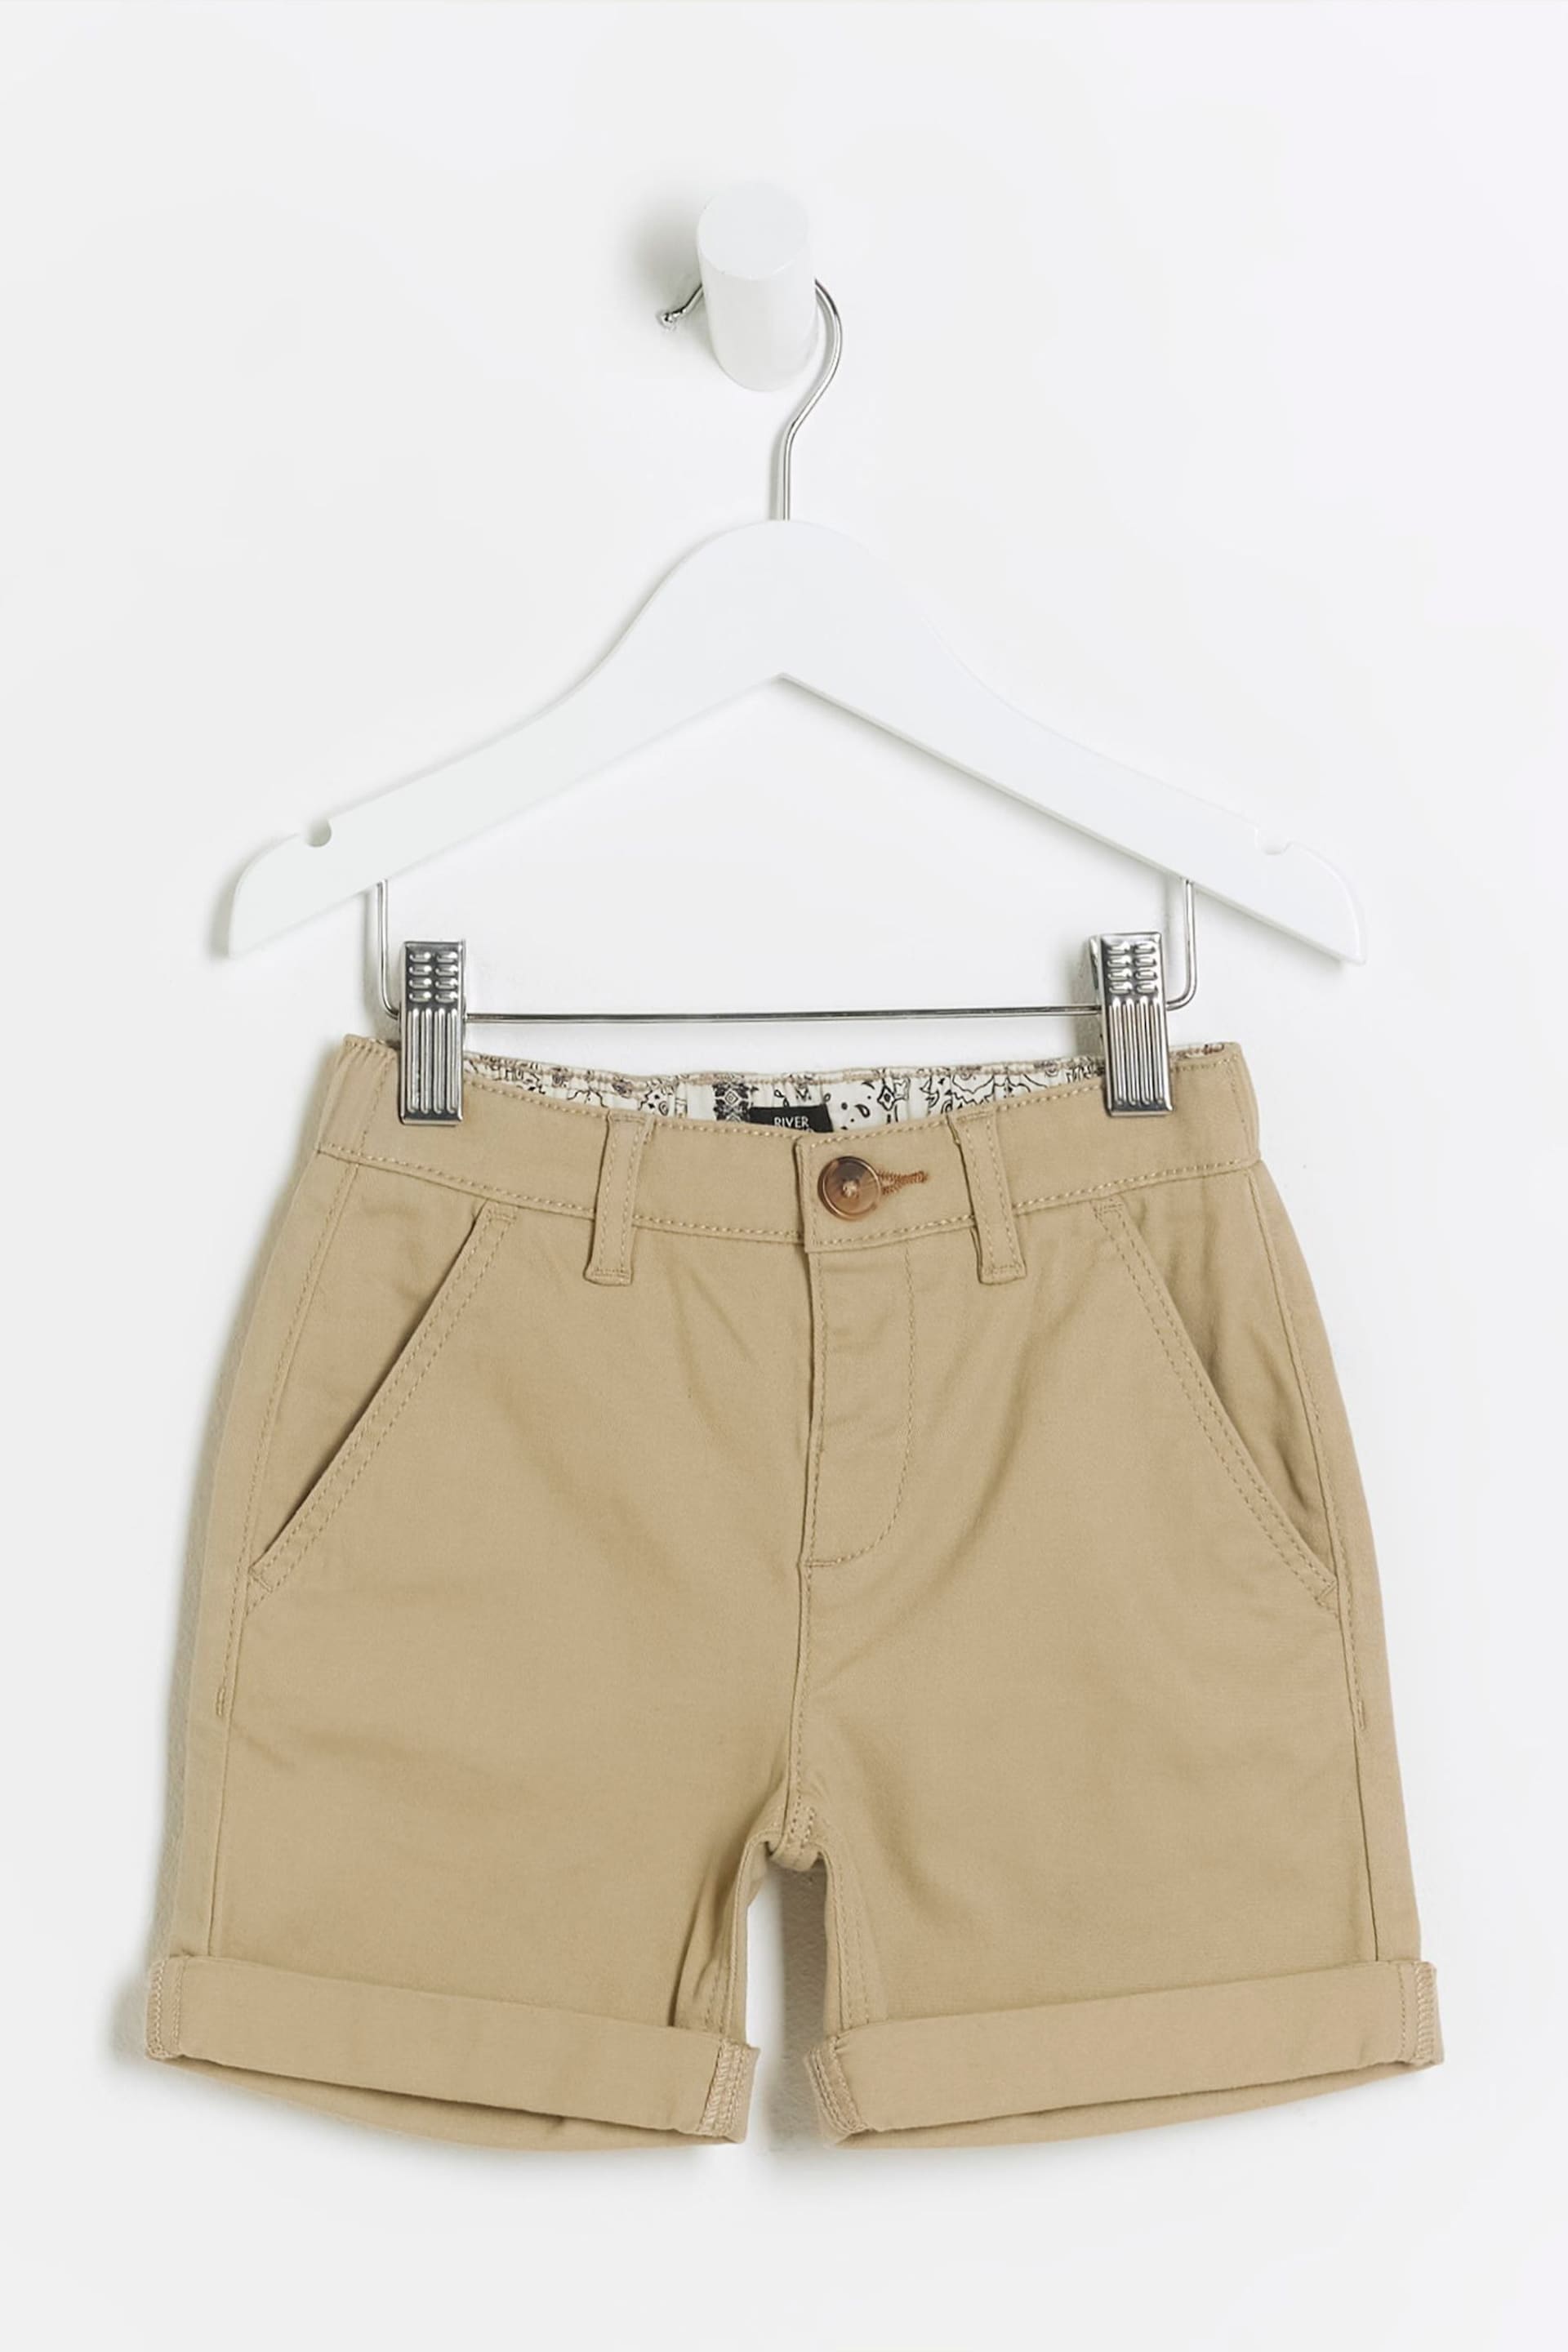 River Island Natural Boys Chino Shorts - Image 1 of 4